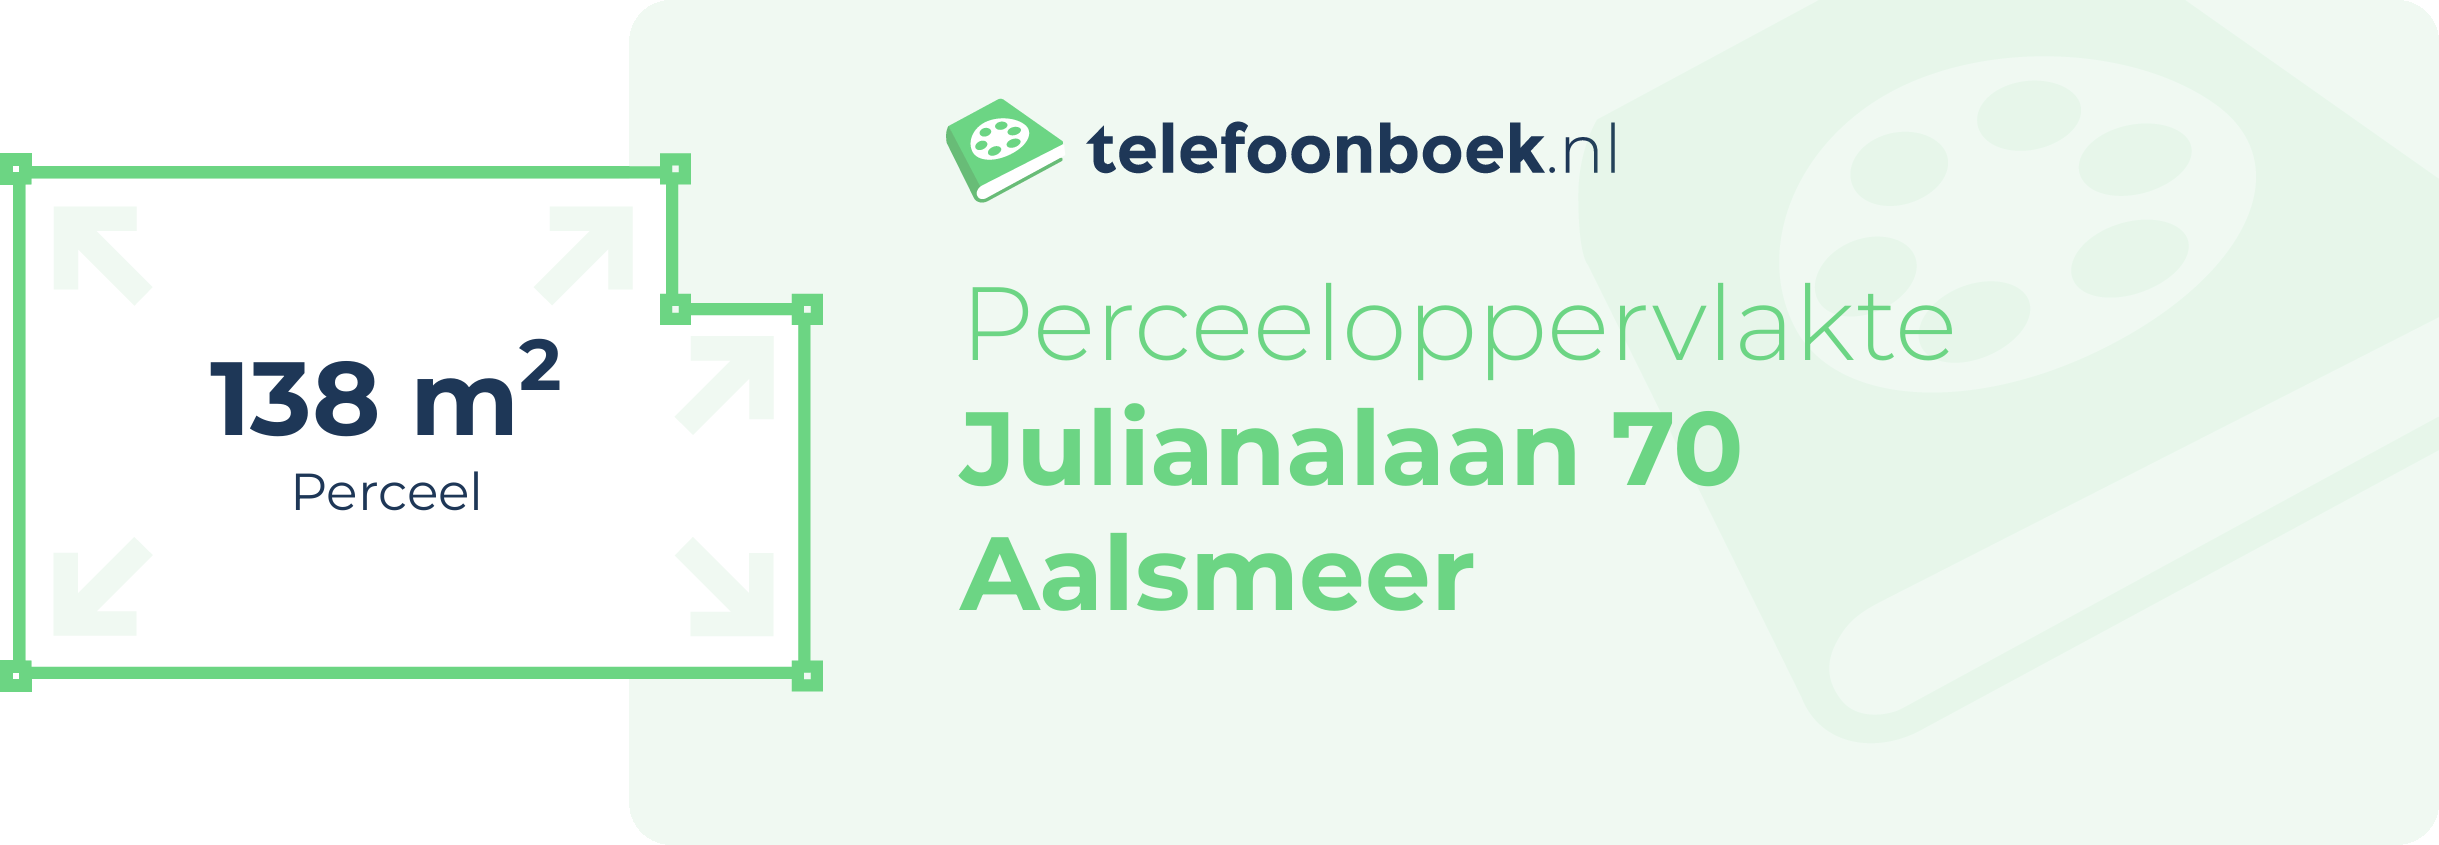 Perceeloppervlakte Julianalaan 70 Aalsmeer